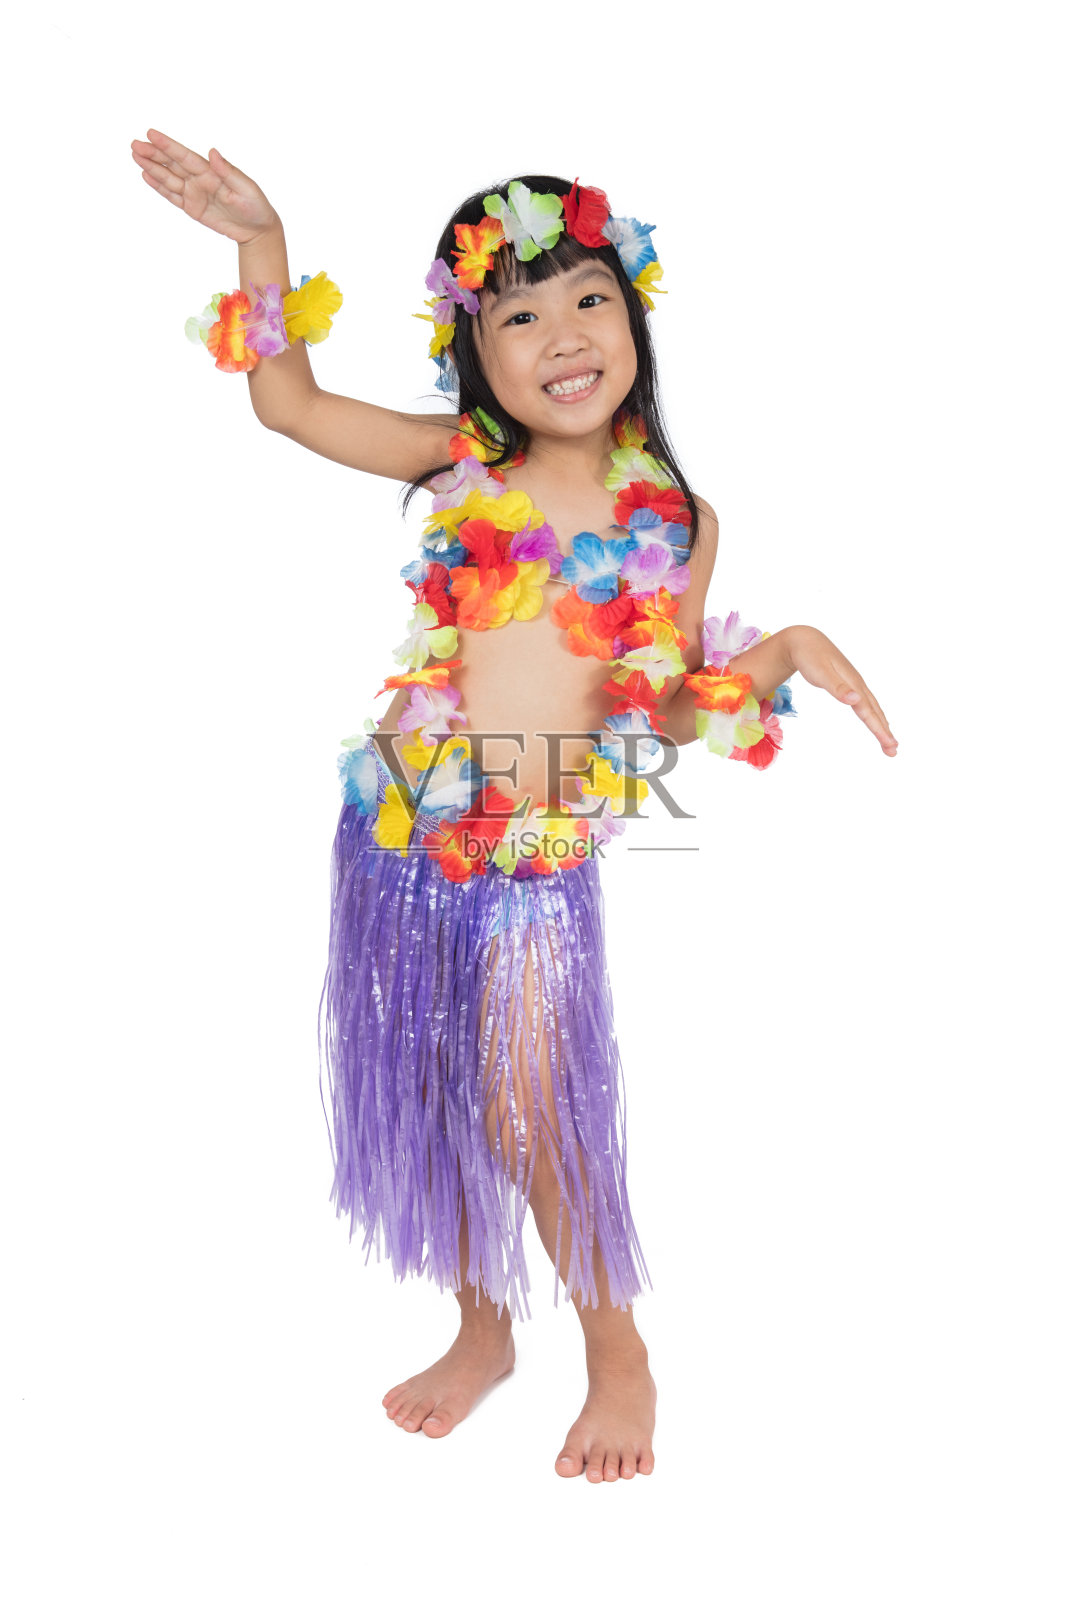 亚裔华裔小女孩穿着夏威夷服装照片摄影图片